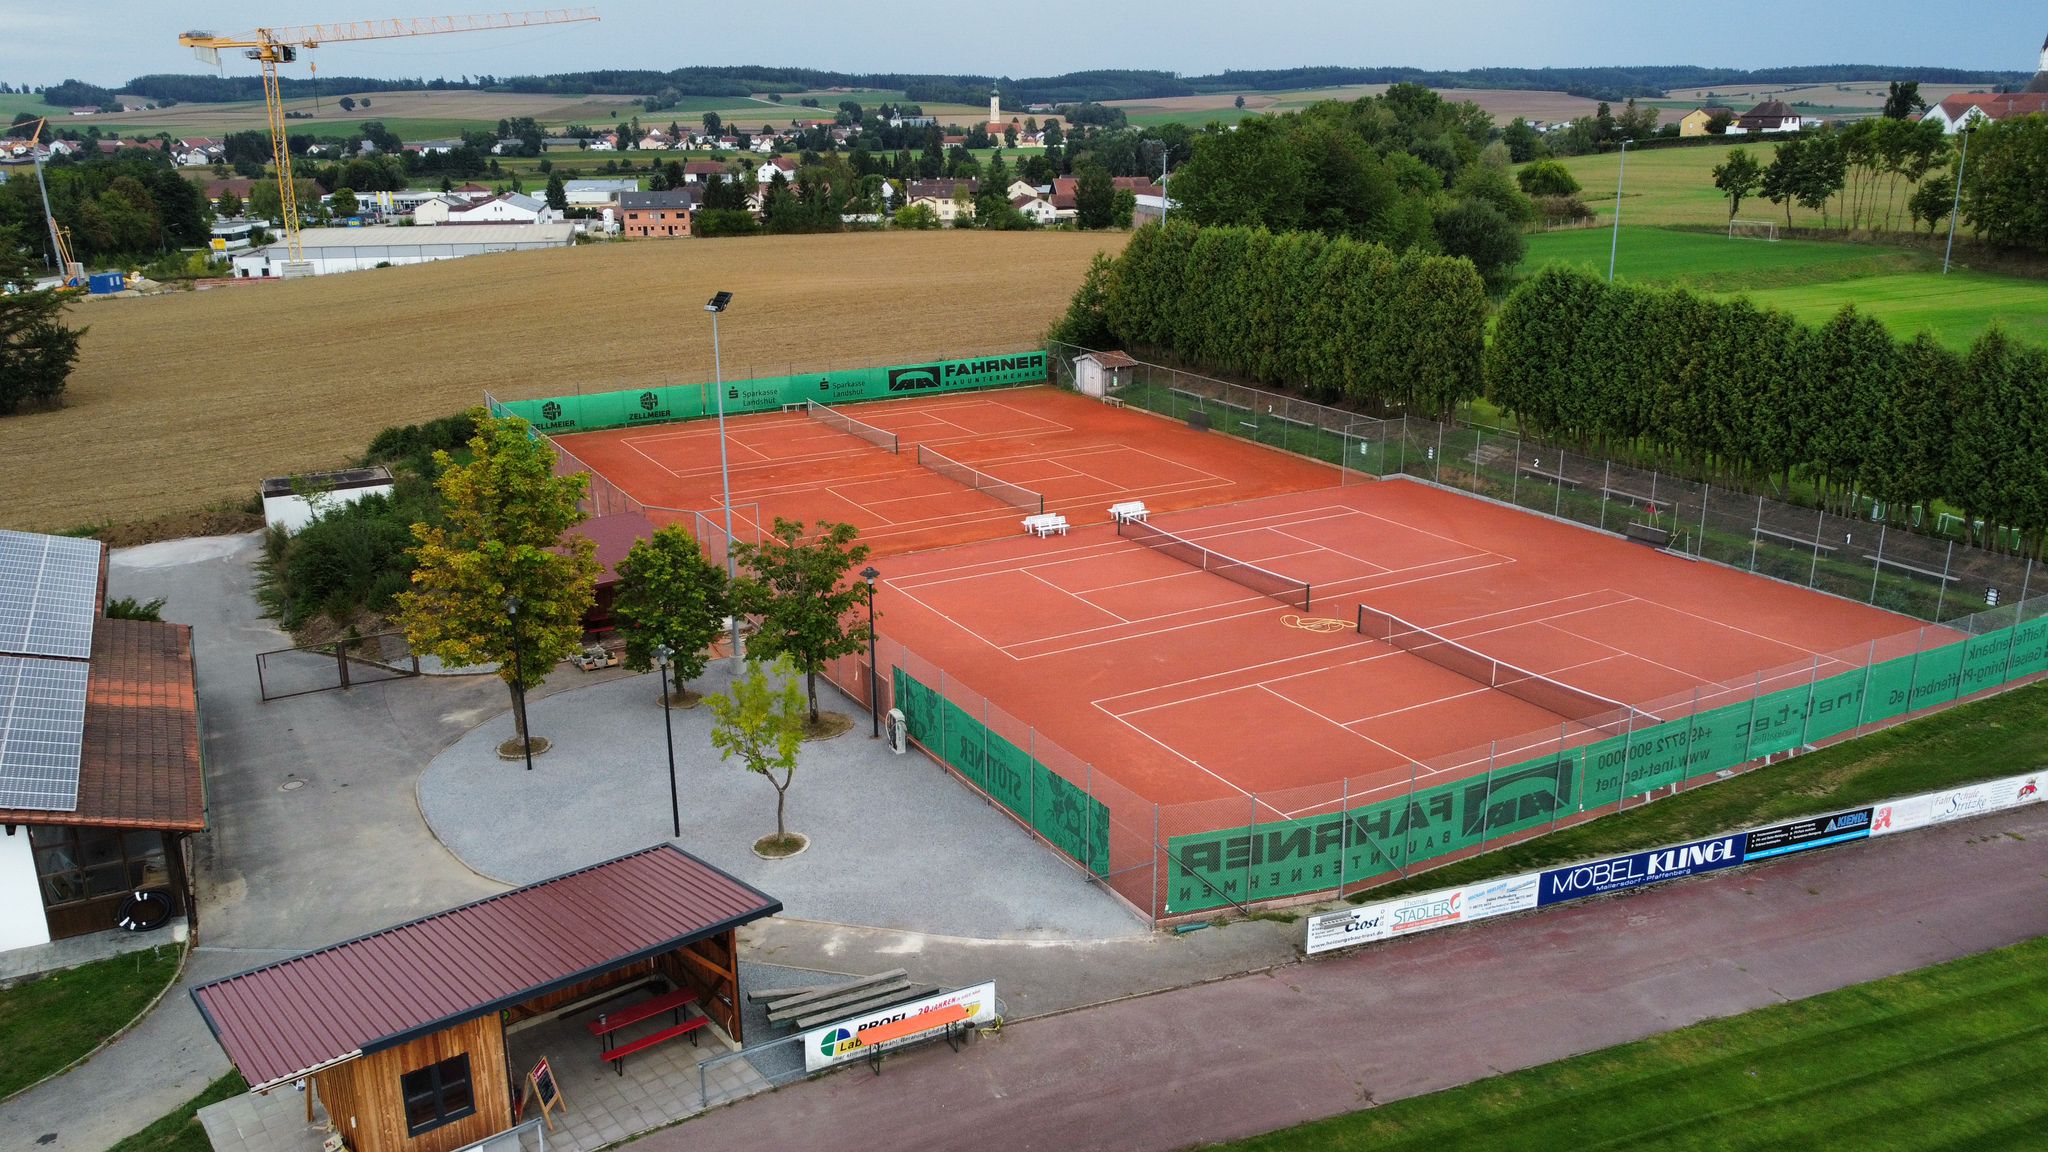 Komplettansicht: Die Tennisanlage fügt sich gut in das Gesamtbild der Anlagen im Sportzentrum Igeltal ein. Links das Vereinsheim mit Vereinsgaststätte, im Vordergrund der Hauptplatz und rechts die beiden Fußballtrainingsplätze.